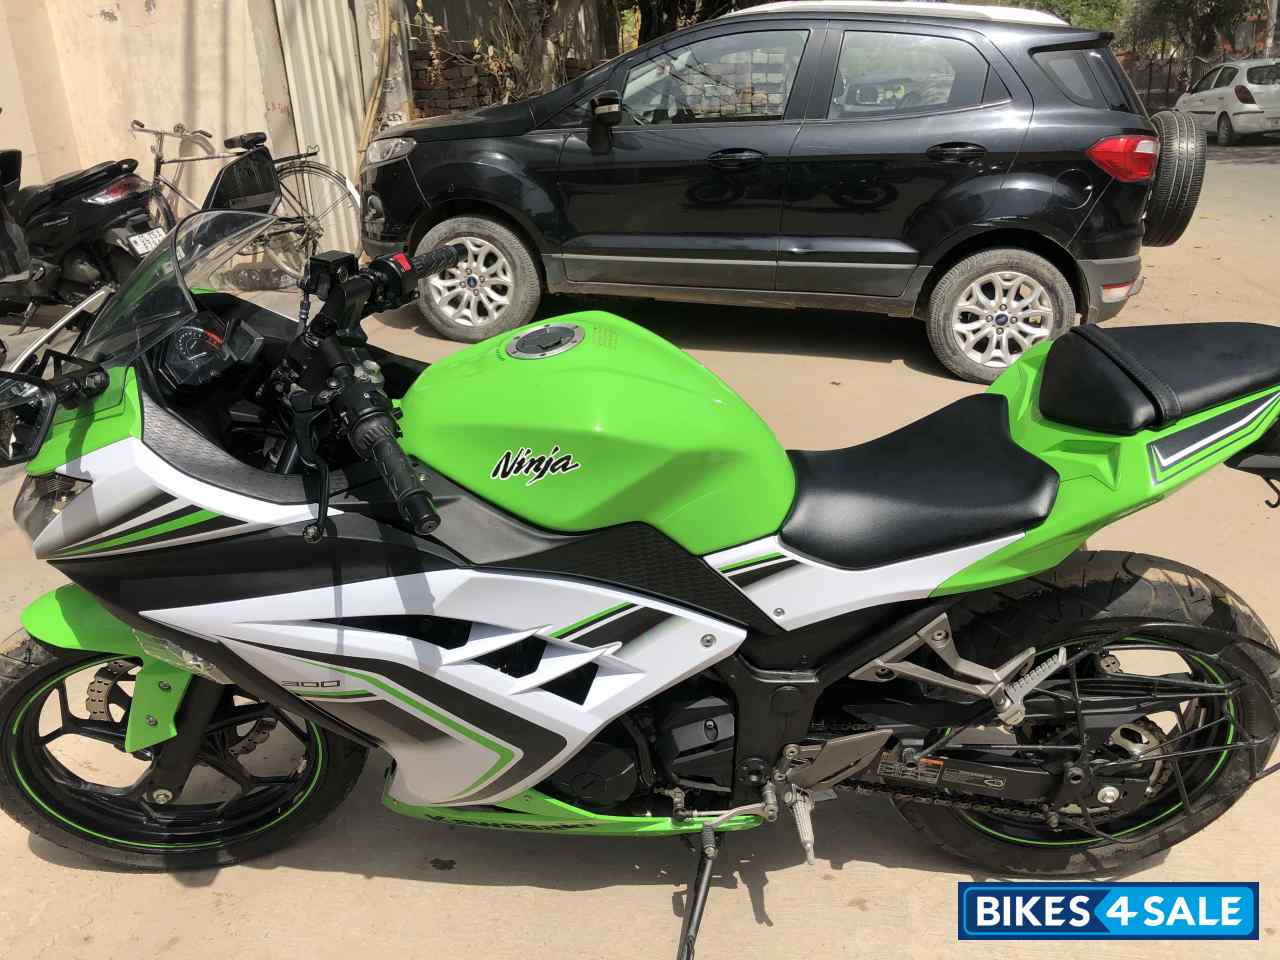 officiel ventilator Indica Used 2016 model Kawasaki Ninja 300R for sale in New Delhi. ID 330900. Green  & White colour - Bikes4Sale